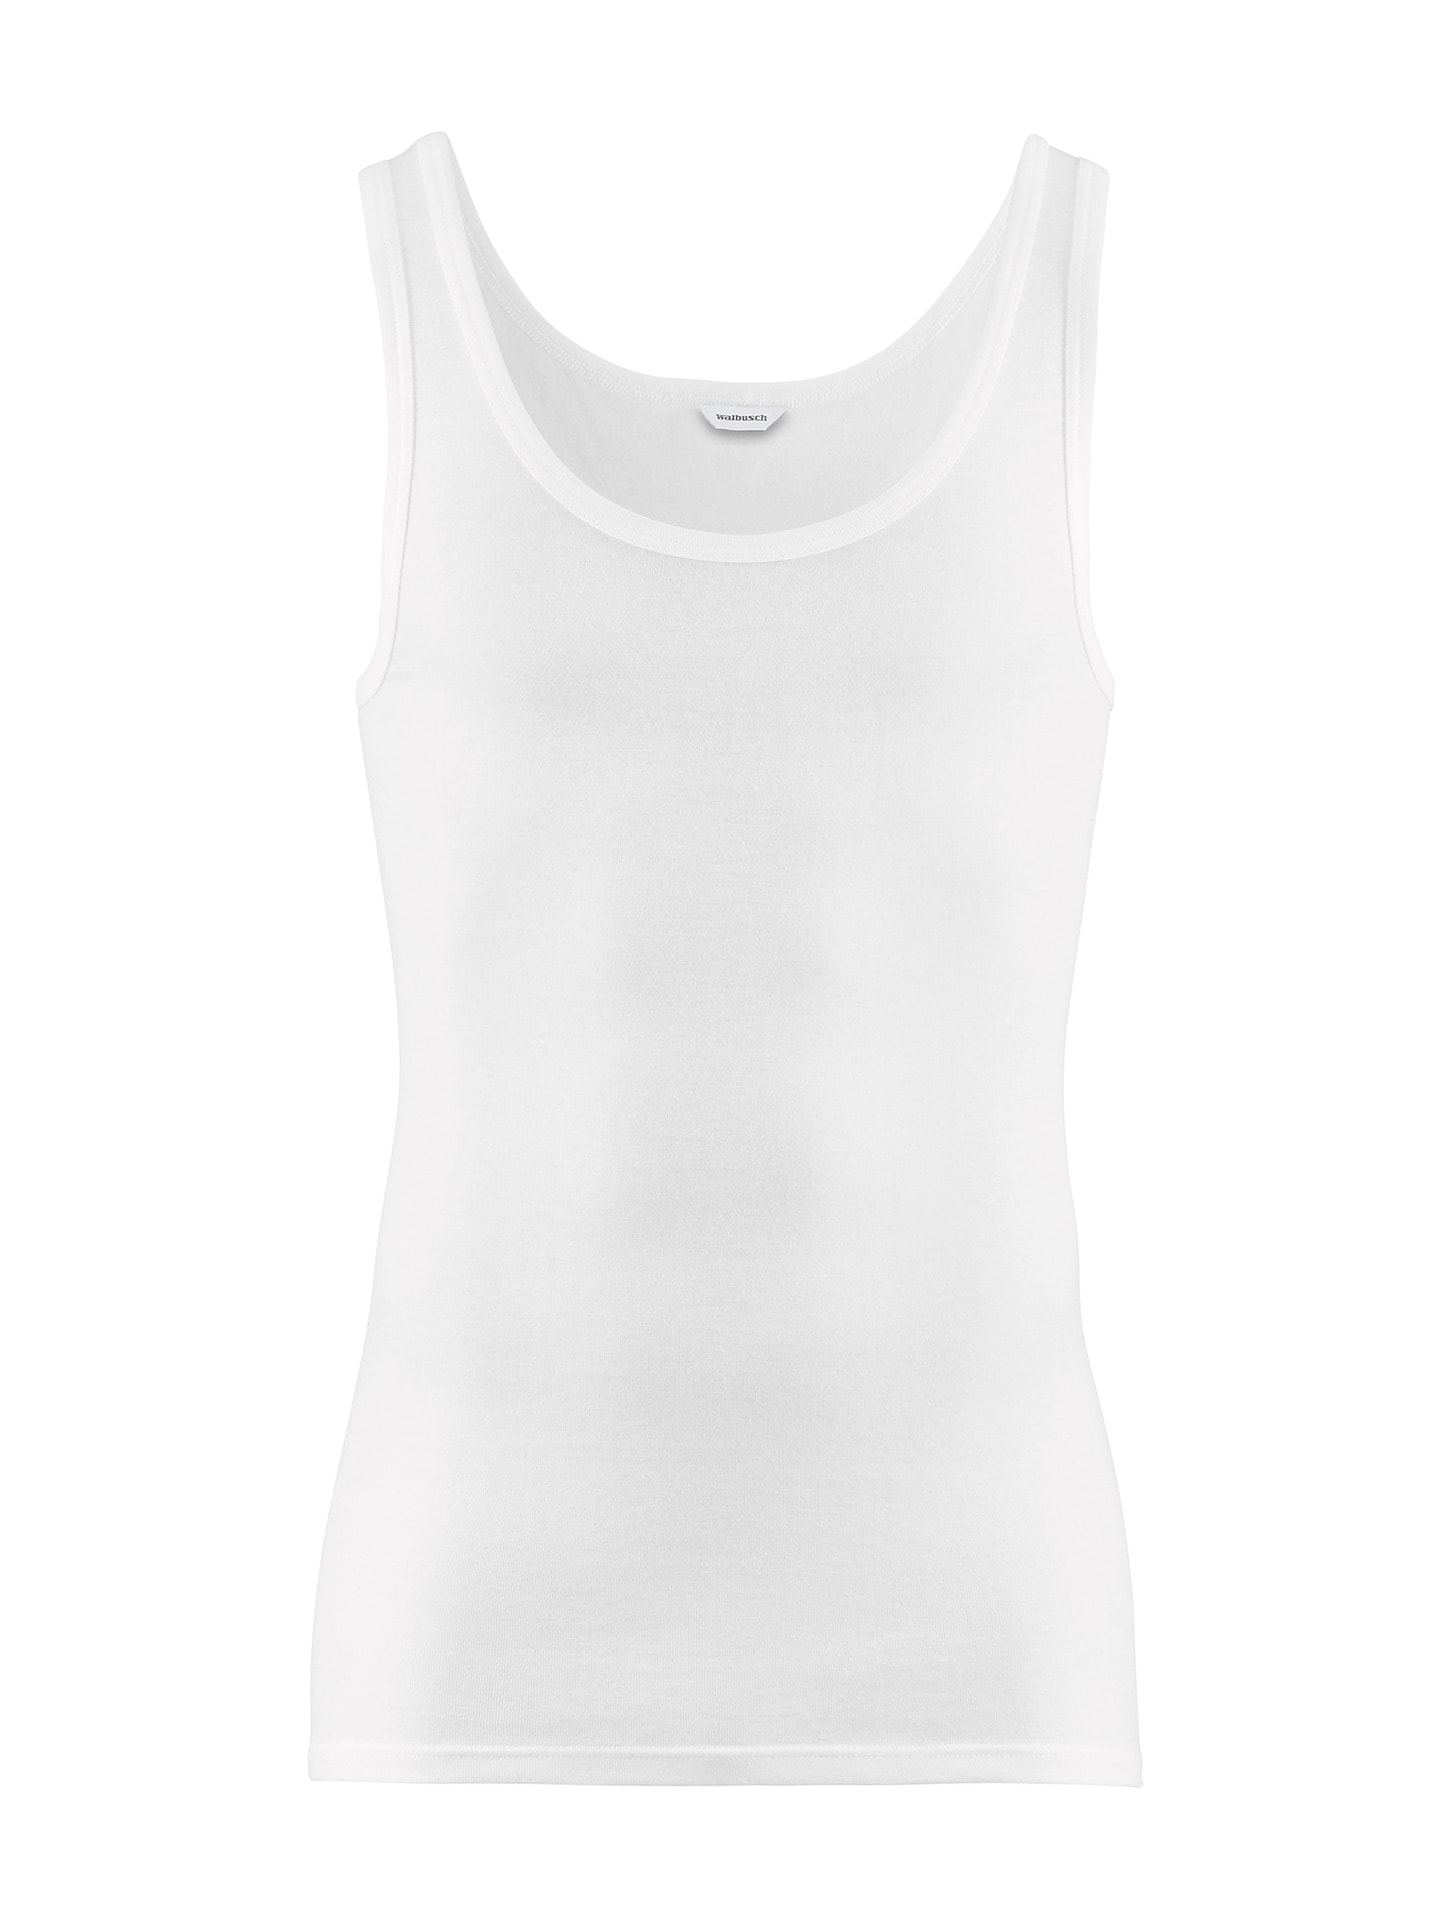 Masterclass-Unterhemd 2er-Pack Weiß im Online-Shop bequem kaufen | Walbusch